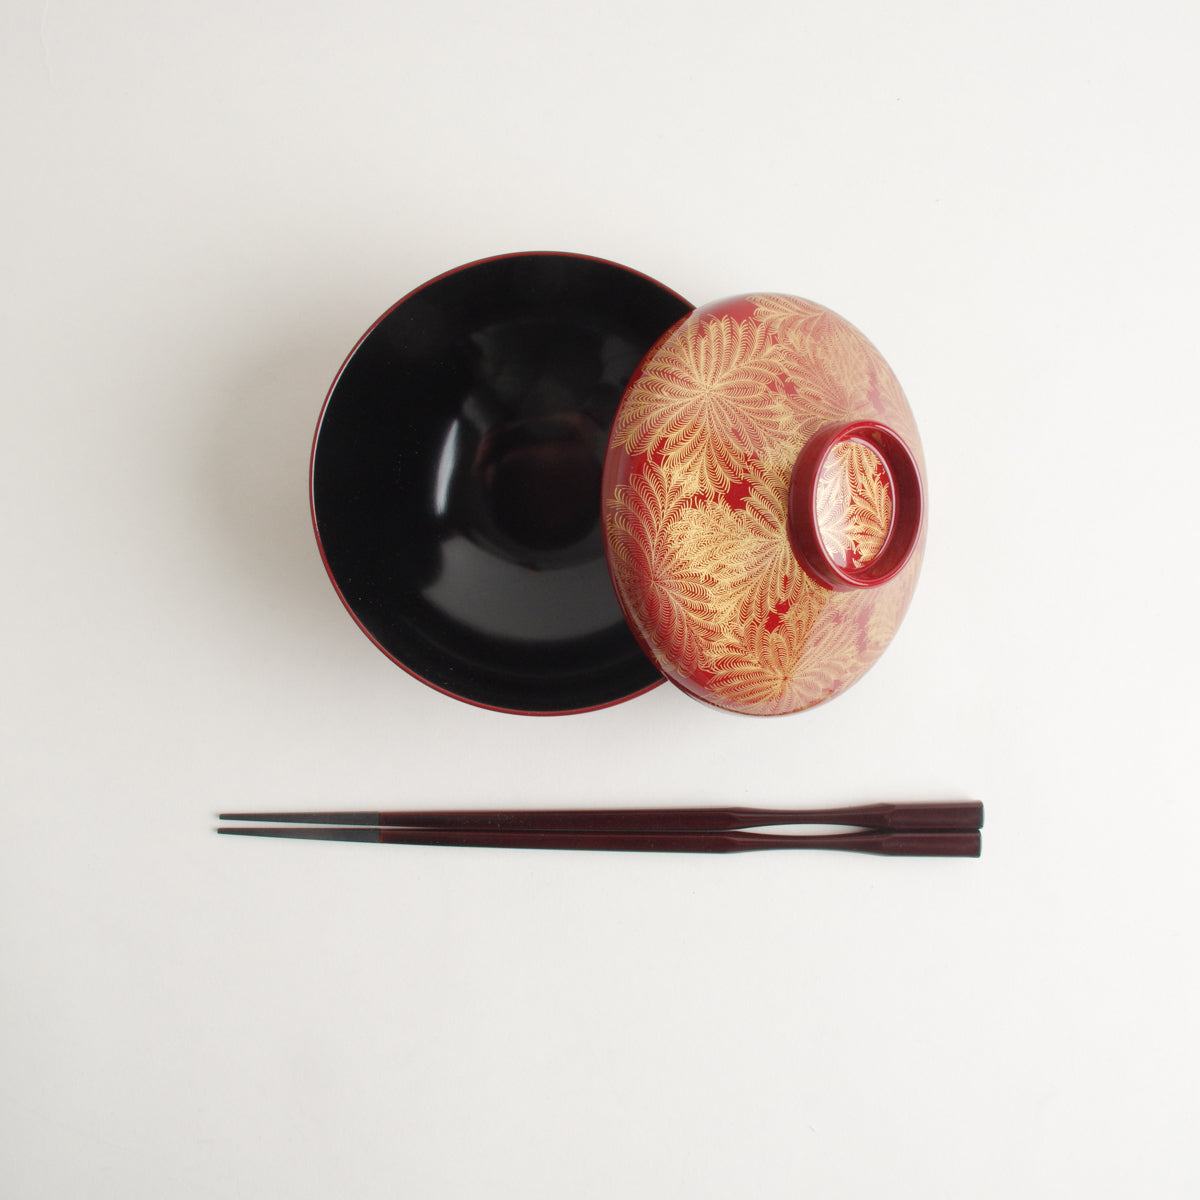 越前漆器 金羊歯絵 富士型椀 12cm/300ml [食洗機対応] Echizen Studio1156